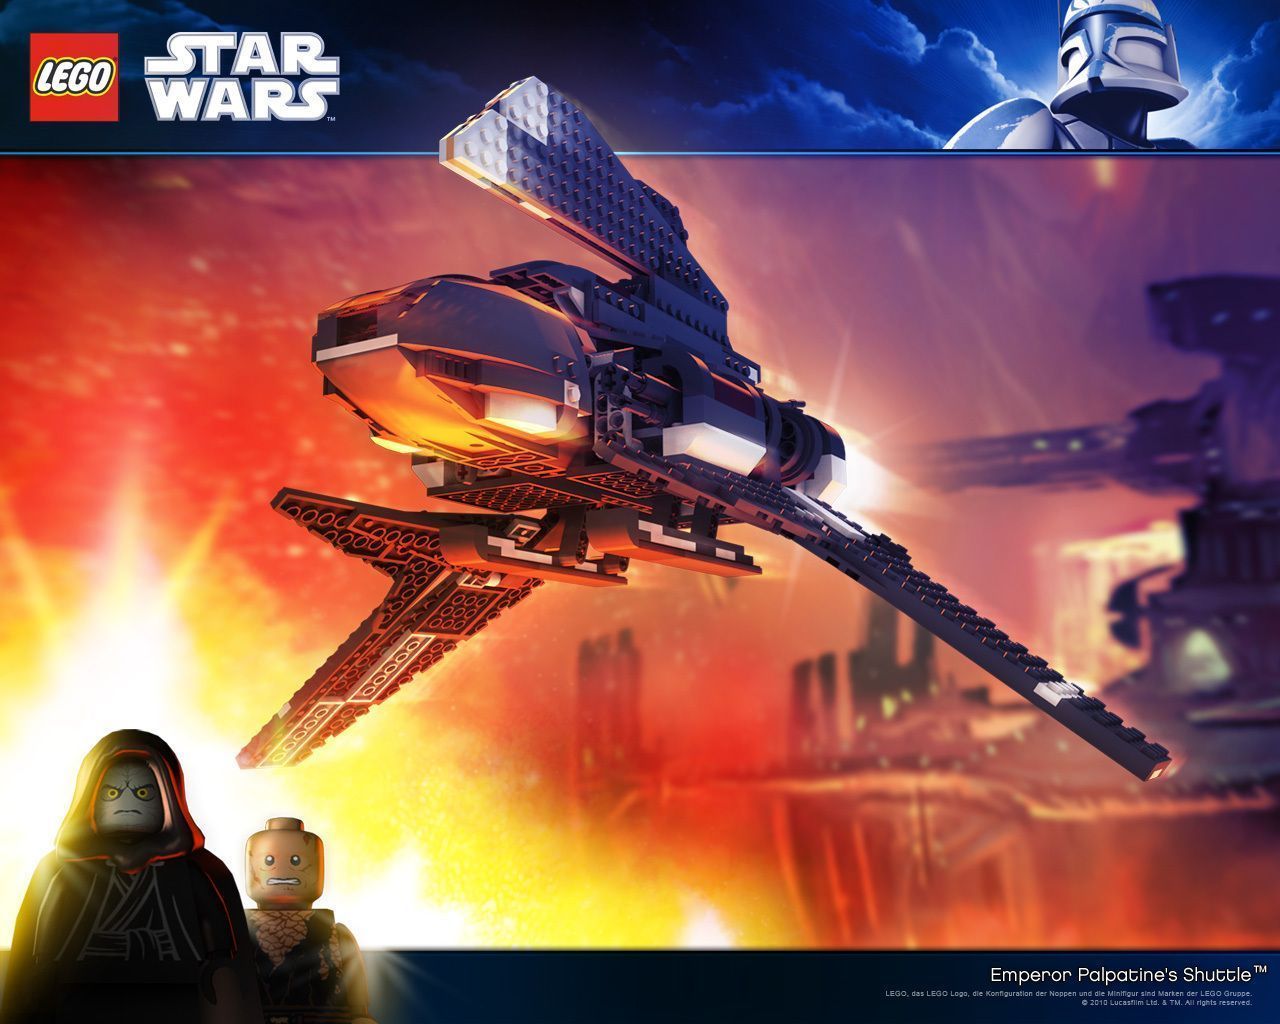 Lego Star Wars - Lego Star Wars Wallpaper (23157036) - Fanpop